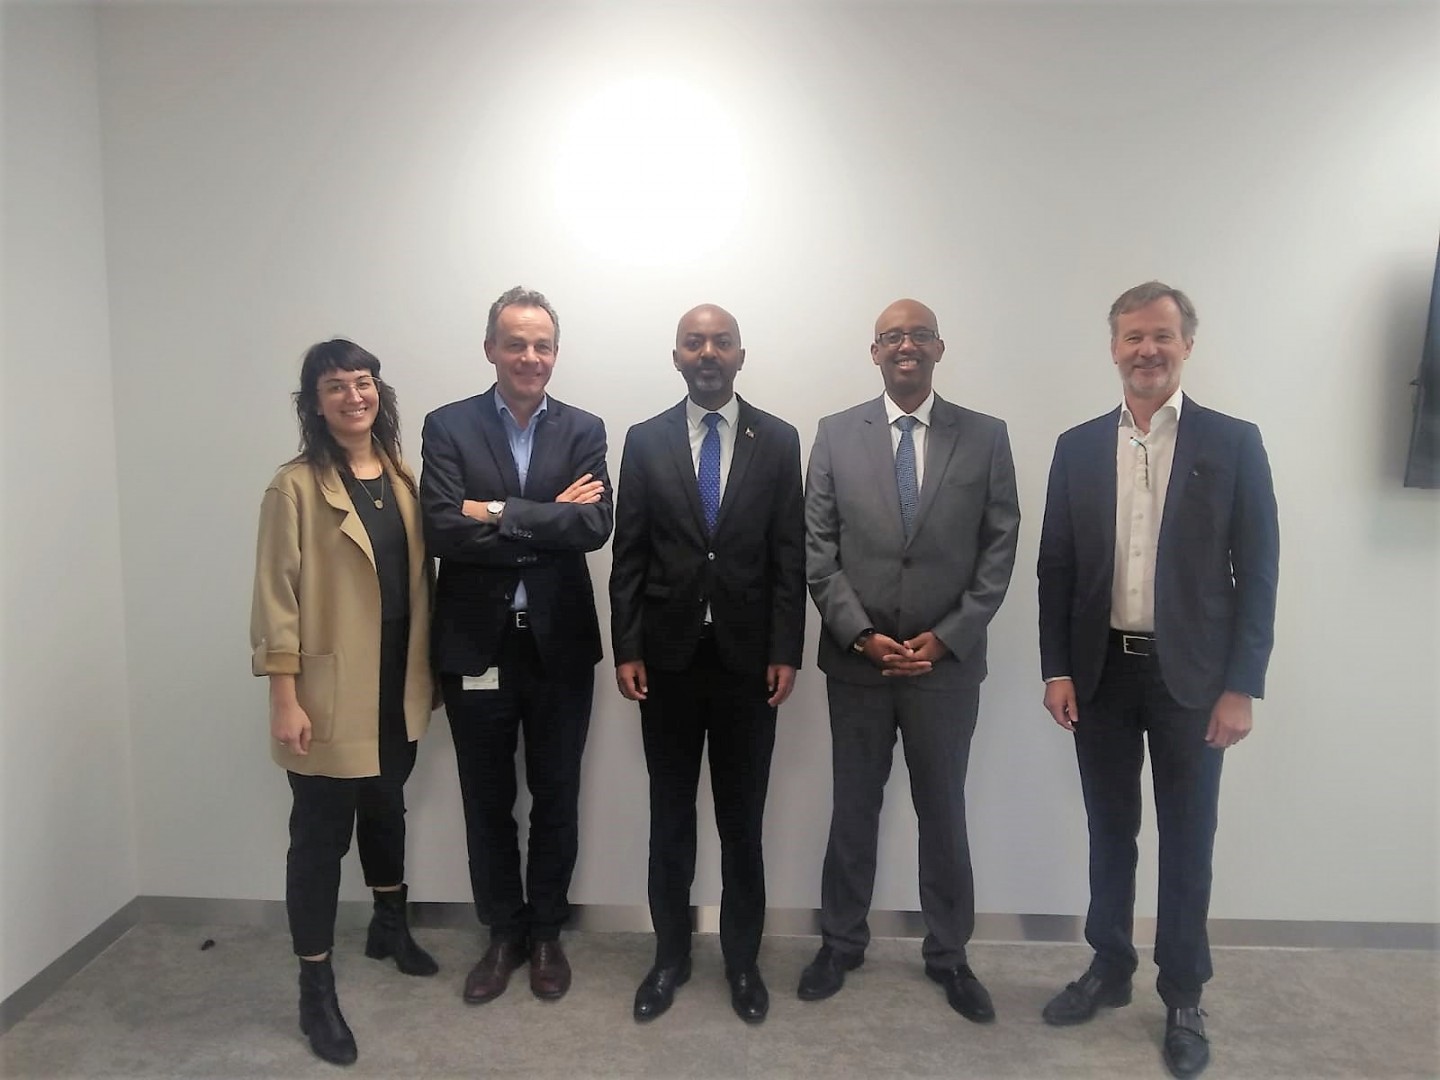 Ambassador of Ethiopia visits Biotech Campus Delft